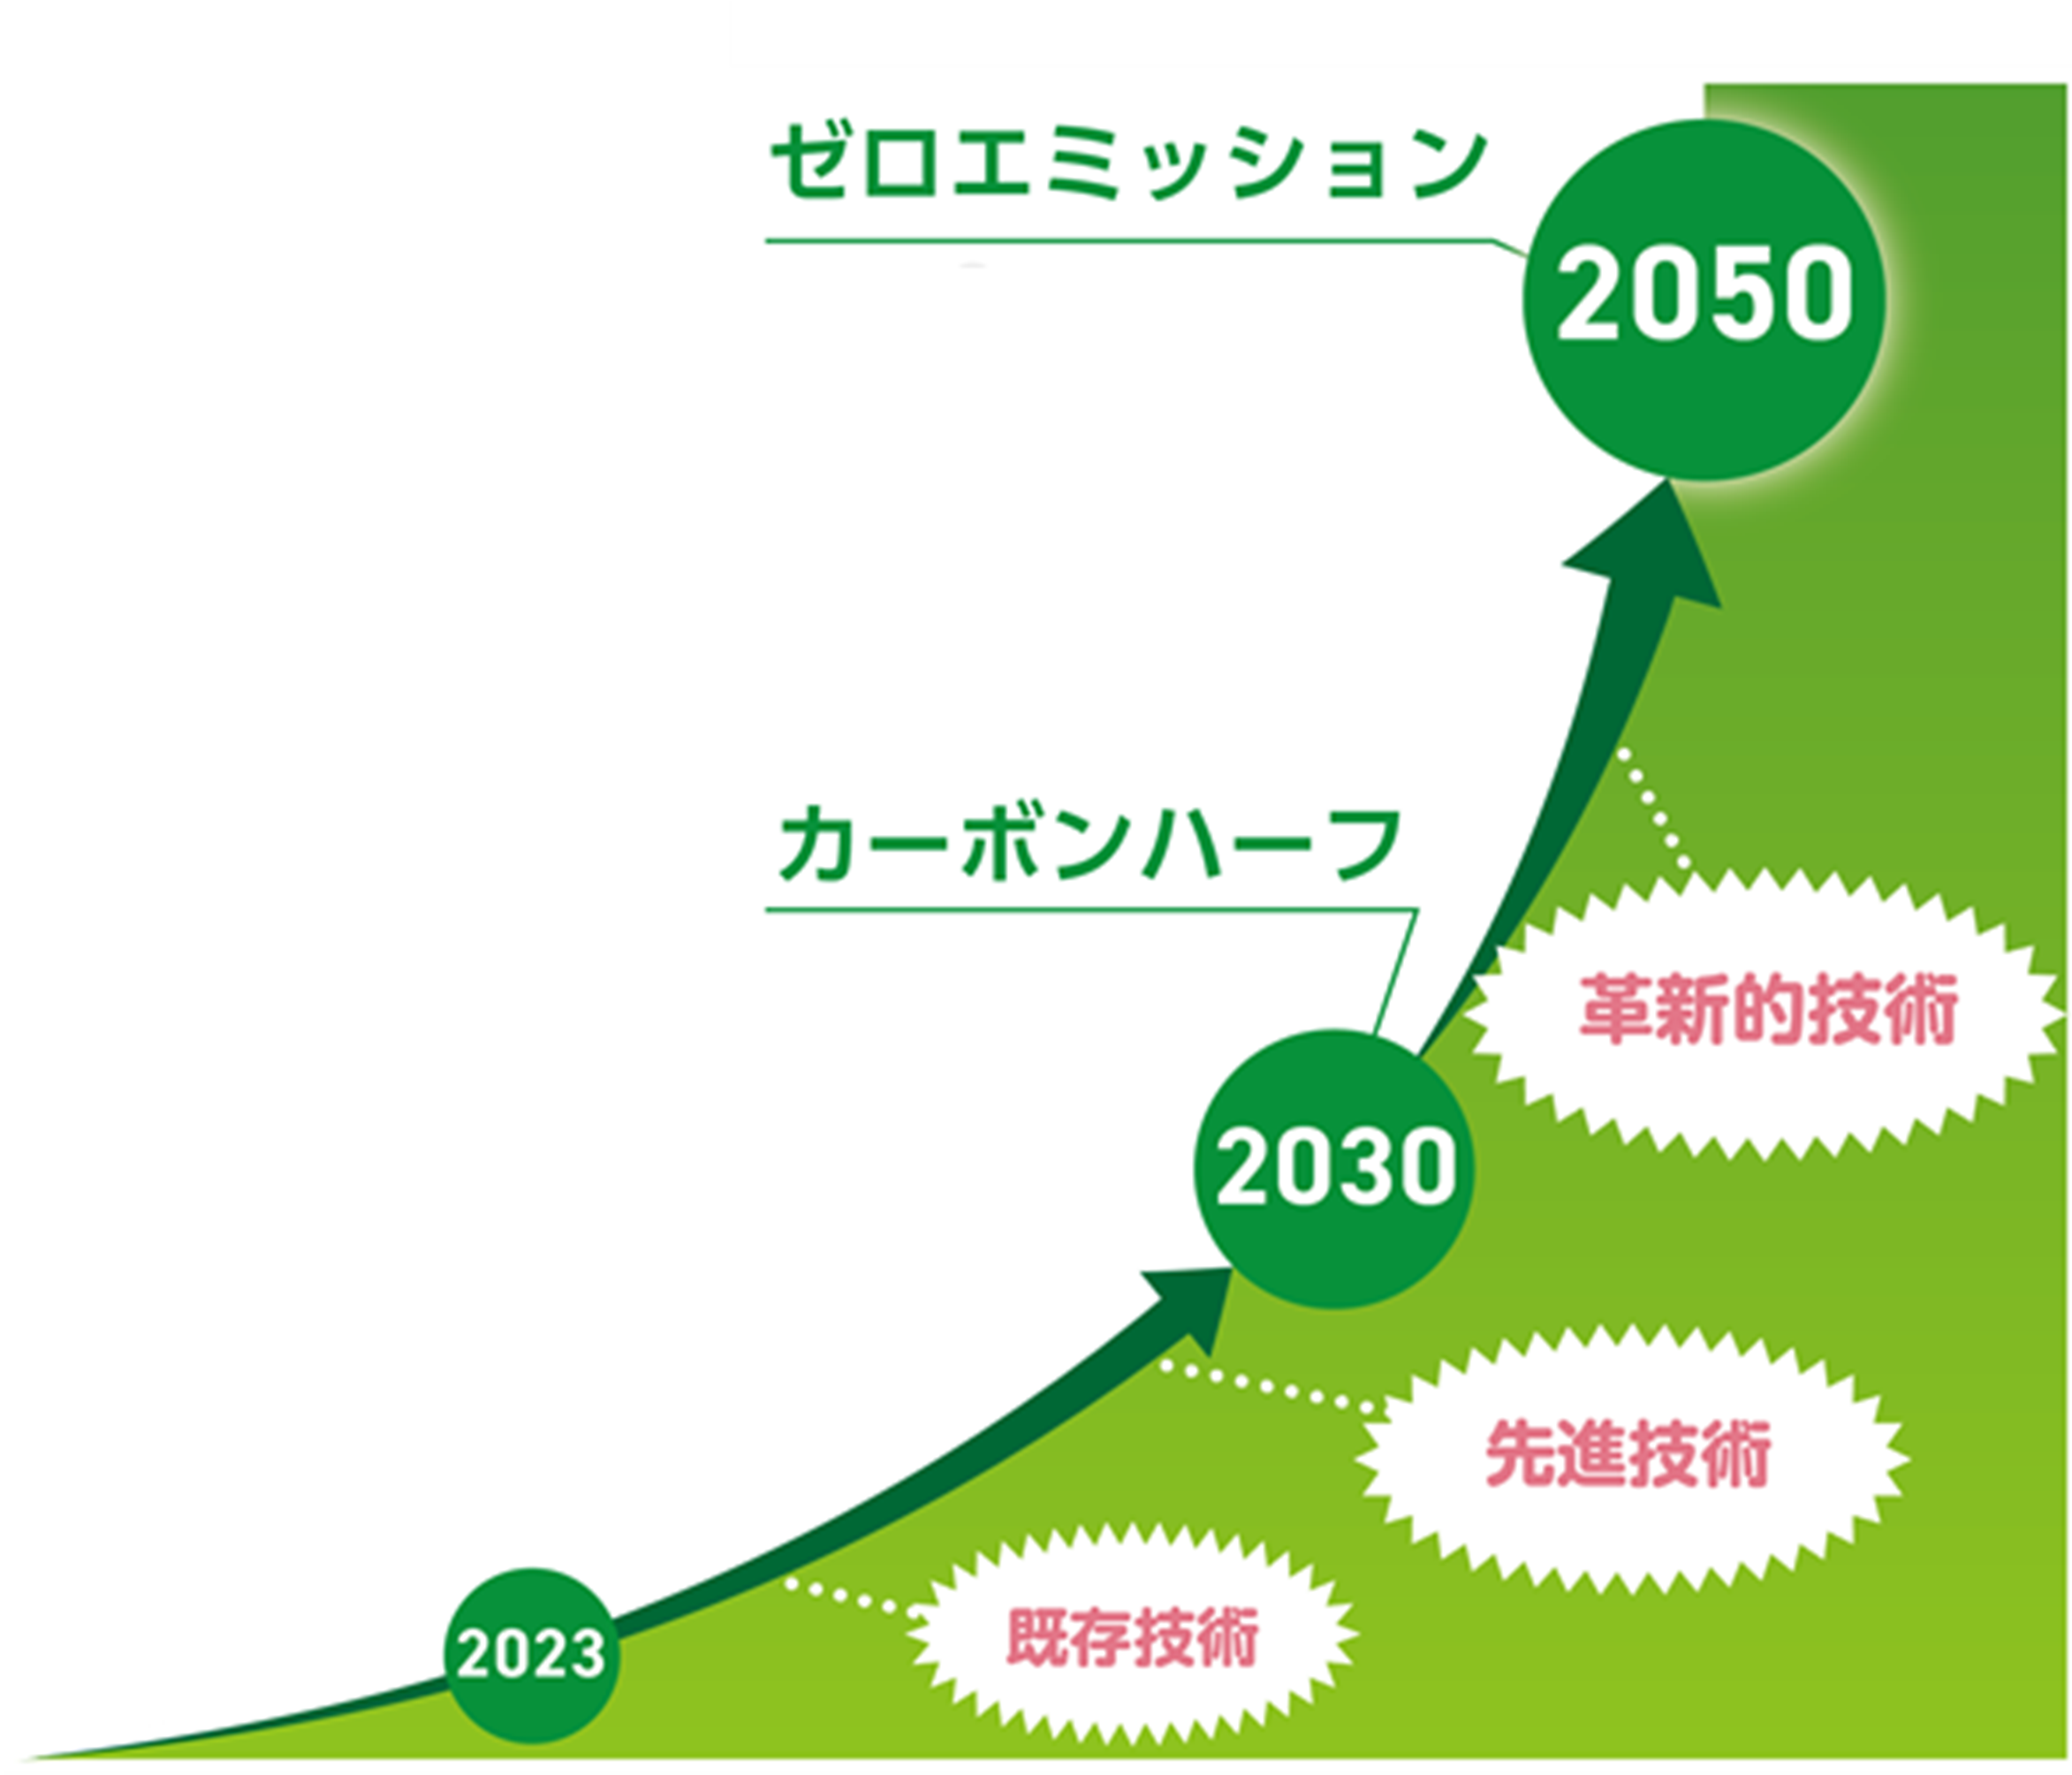 ゼロエミッション実現に向けたビジョンの図。2050年ゼロエミッション実現に向けて、更なる先進技術の導入推進に加え、革新的技術の開発・導入を推進していく。